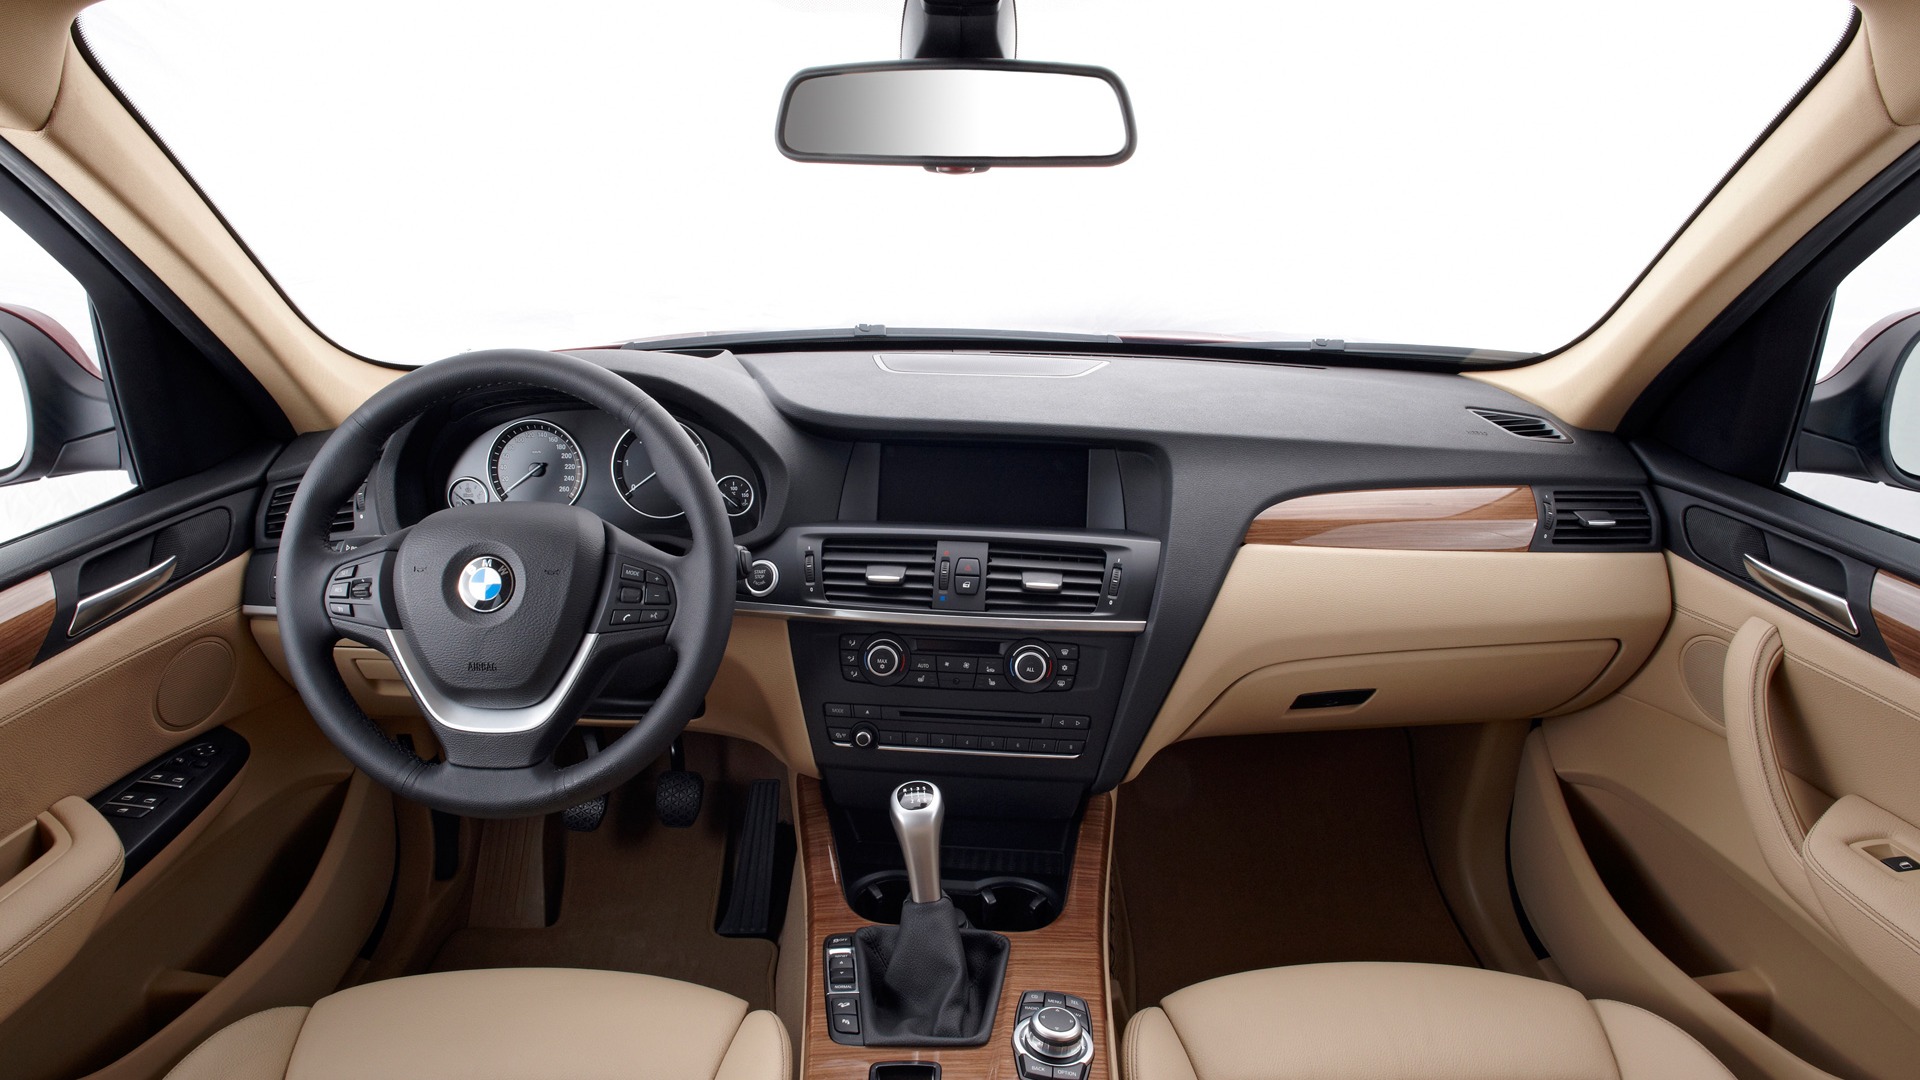 BMW X3 xDrive20d - 2010 宝马(二)39 - 1920x1080